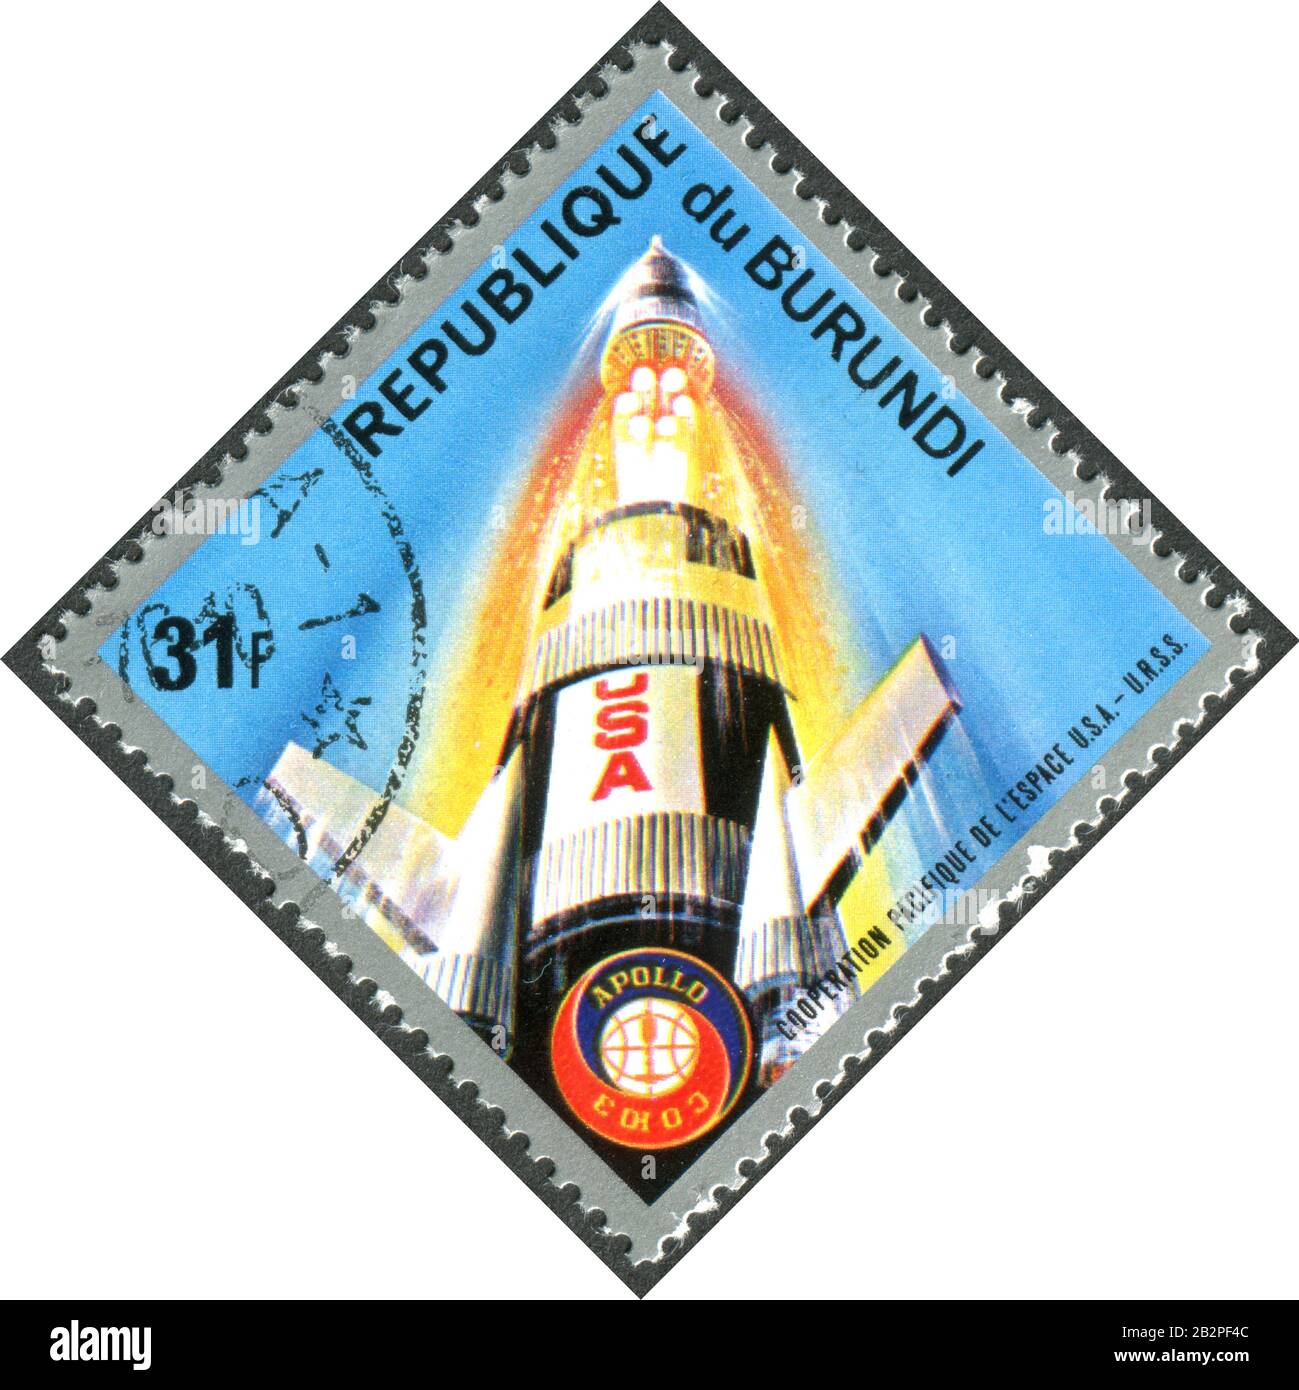 Burundi - VERS 1975 : un timbre imprimé au Burundi, projet de test Apollo – Soyuz dédié, a représenté la séparation de la troisième étape d'Apollo, vers 1975 Banque D'Images